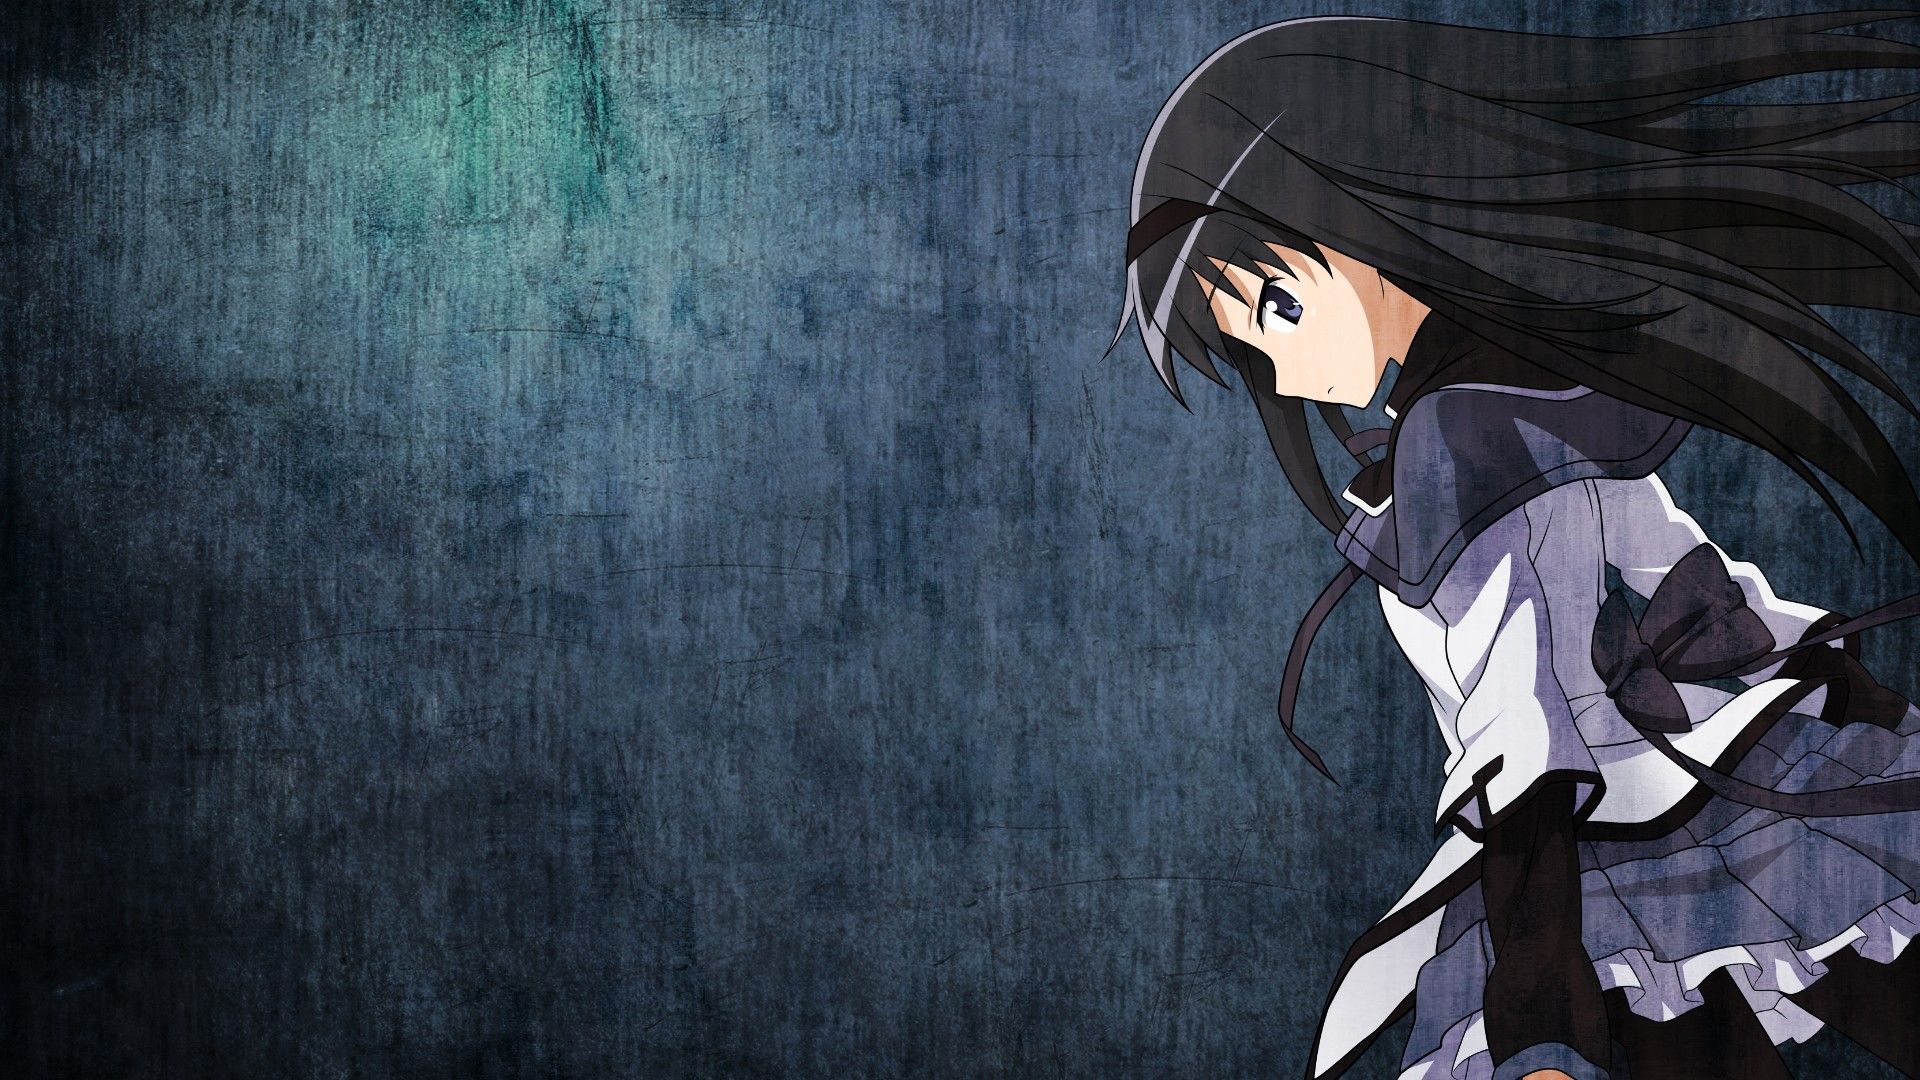 Anime Desktop Background. Anime Wallpaper, Beautiful Anime Wallpaper and Awesome Anime Wallpaper